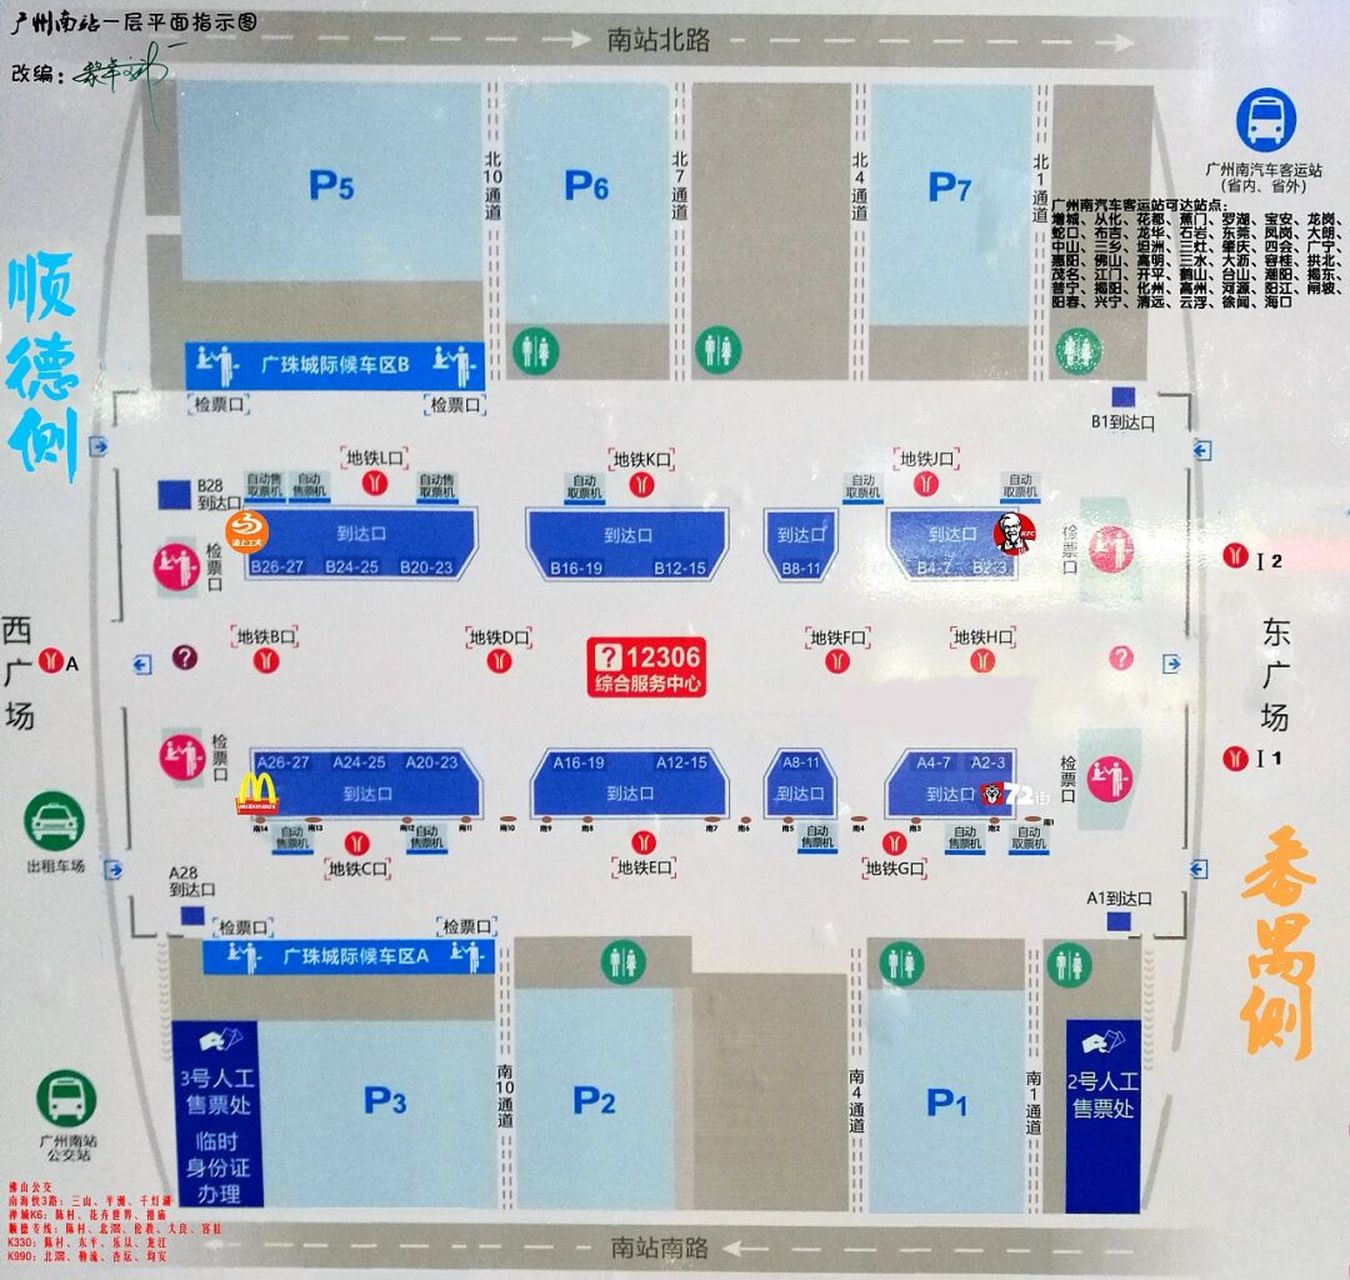 广州南站检票口分布图图片